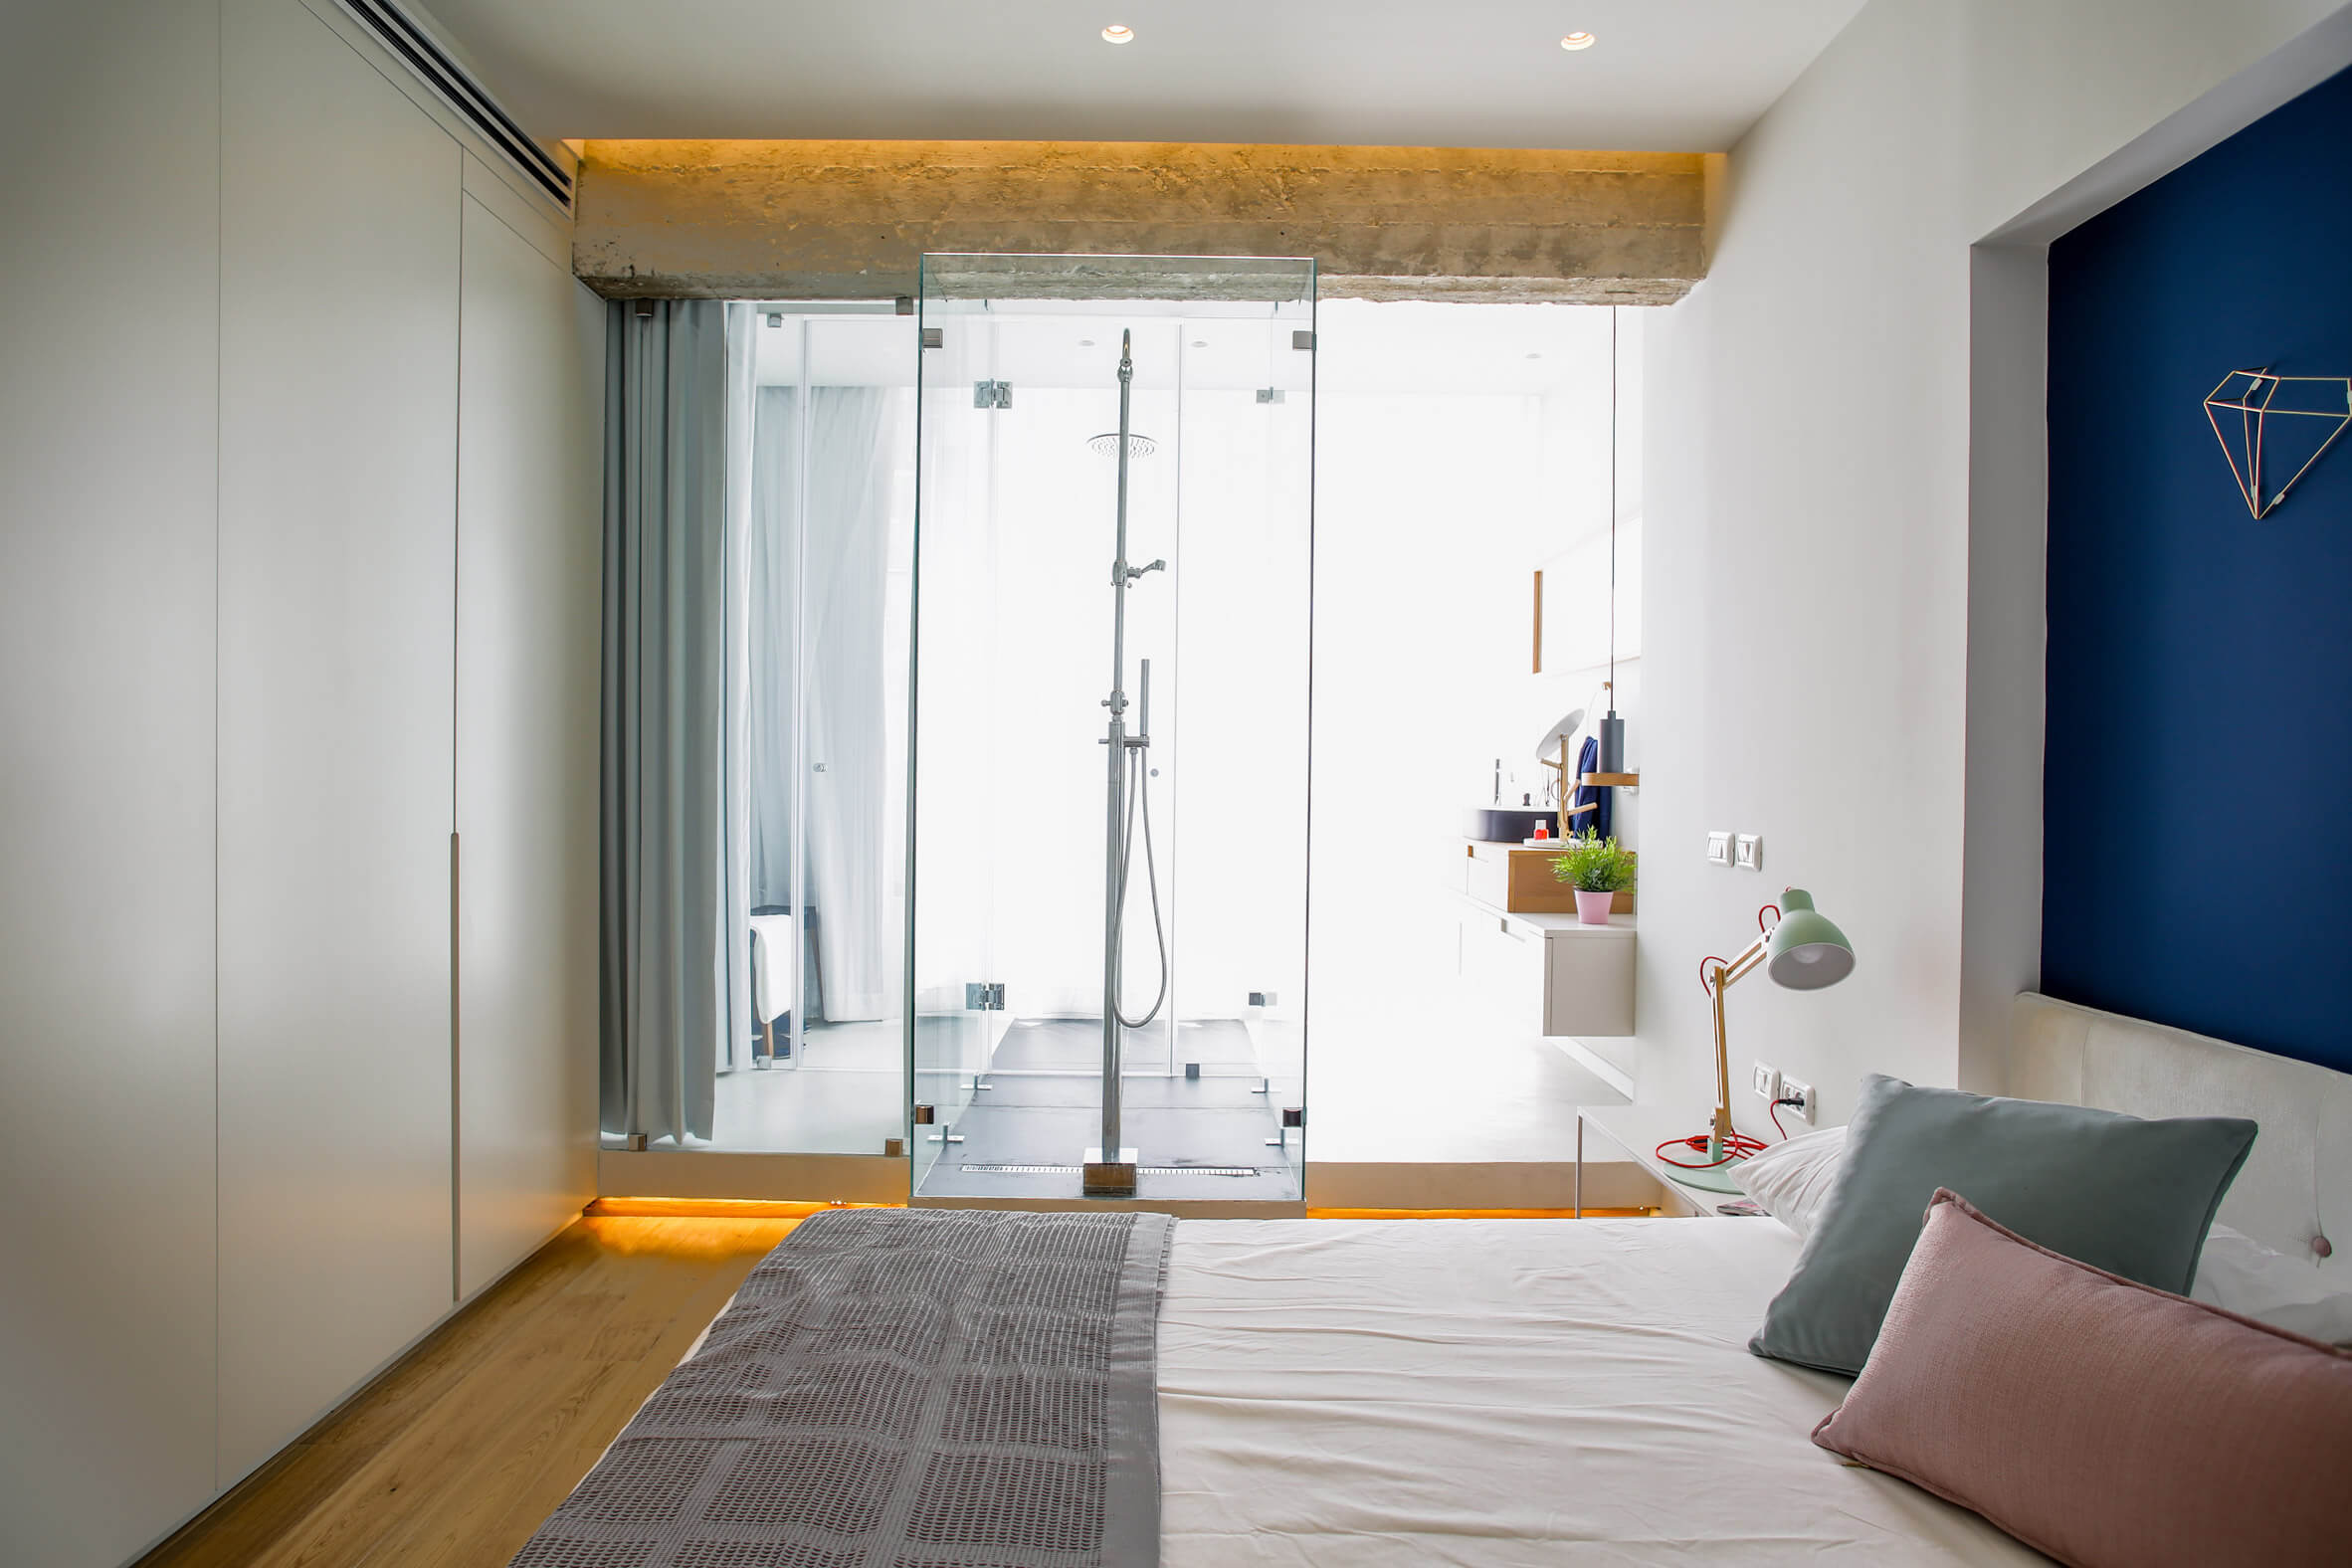 Apartamento de 1950 ganha reforma e ambientes integrados - Suite Banheiro Aberto